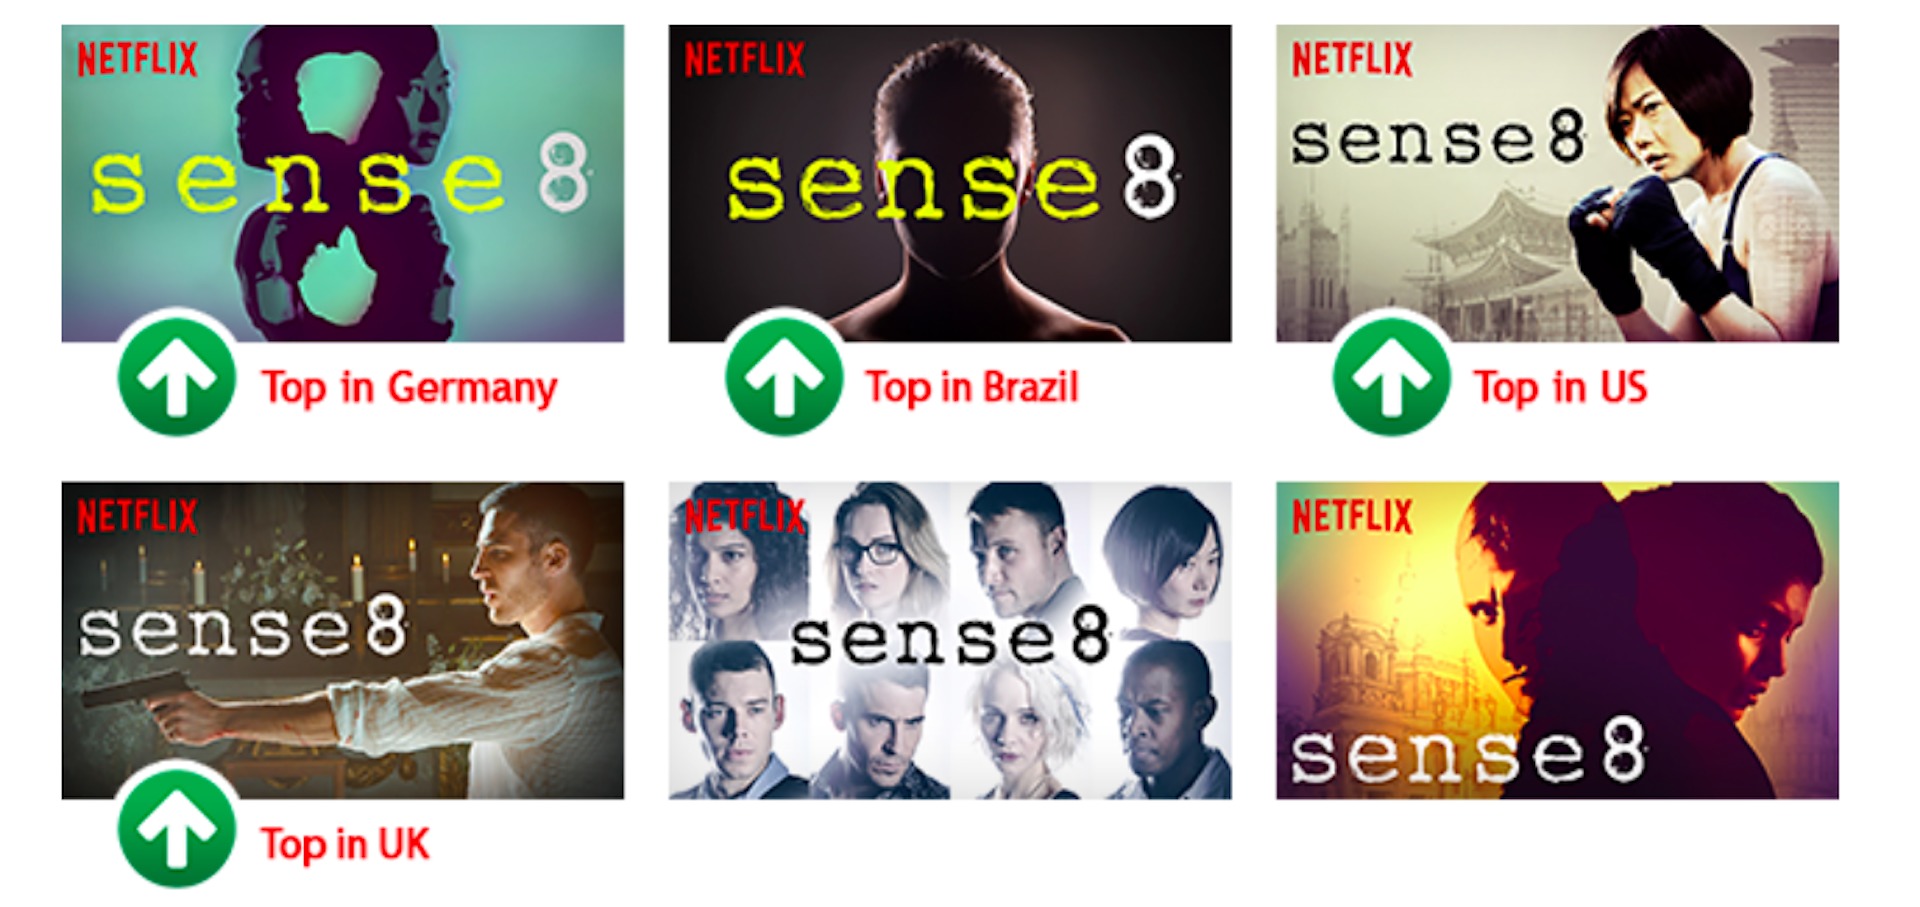 Netflix prueba diferentes creatividades para encontrar el mejor diseño para cada usuario